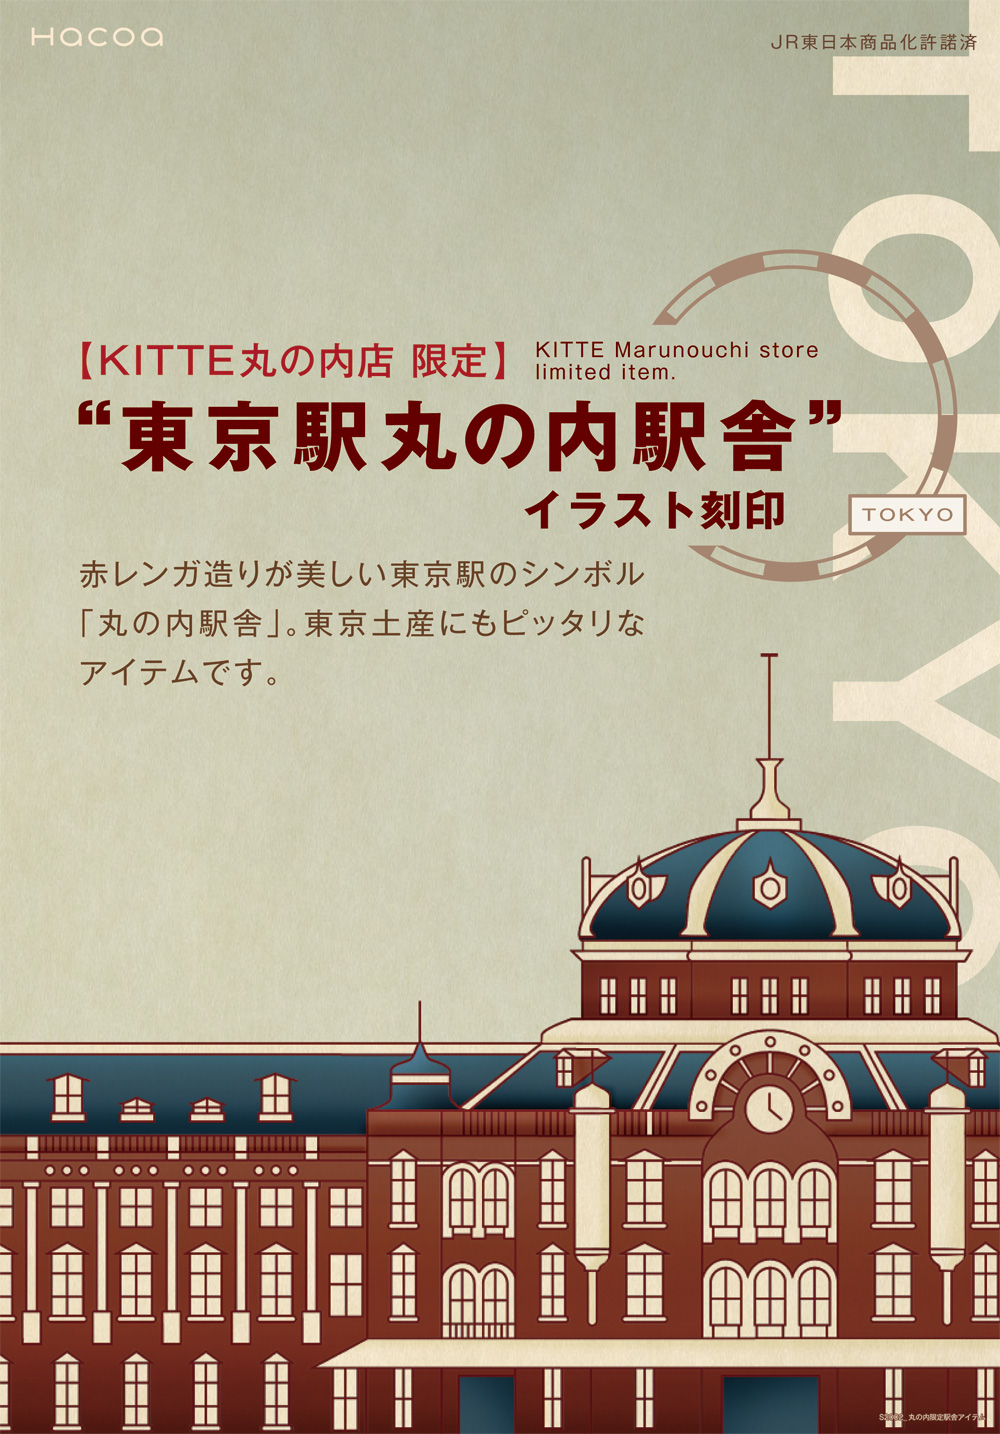 KITTE丸の内店限定の「東京駅丸の内駅舎」のイラスト刻印